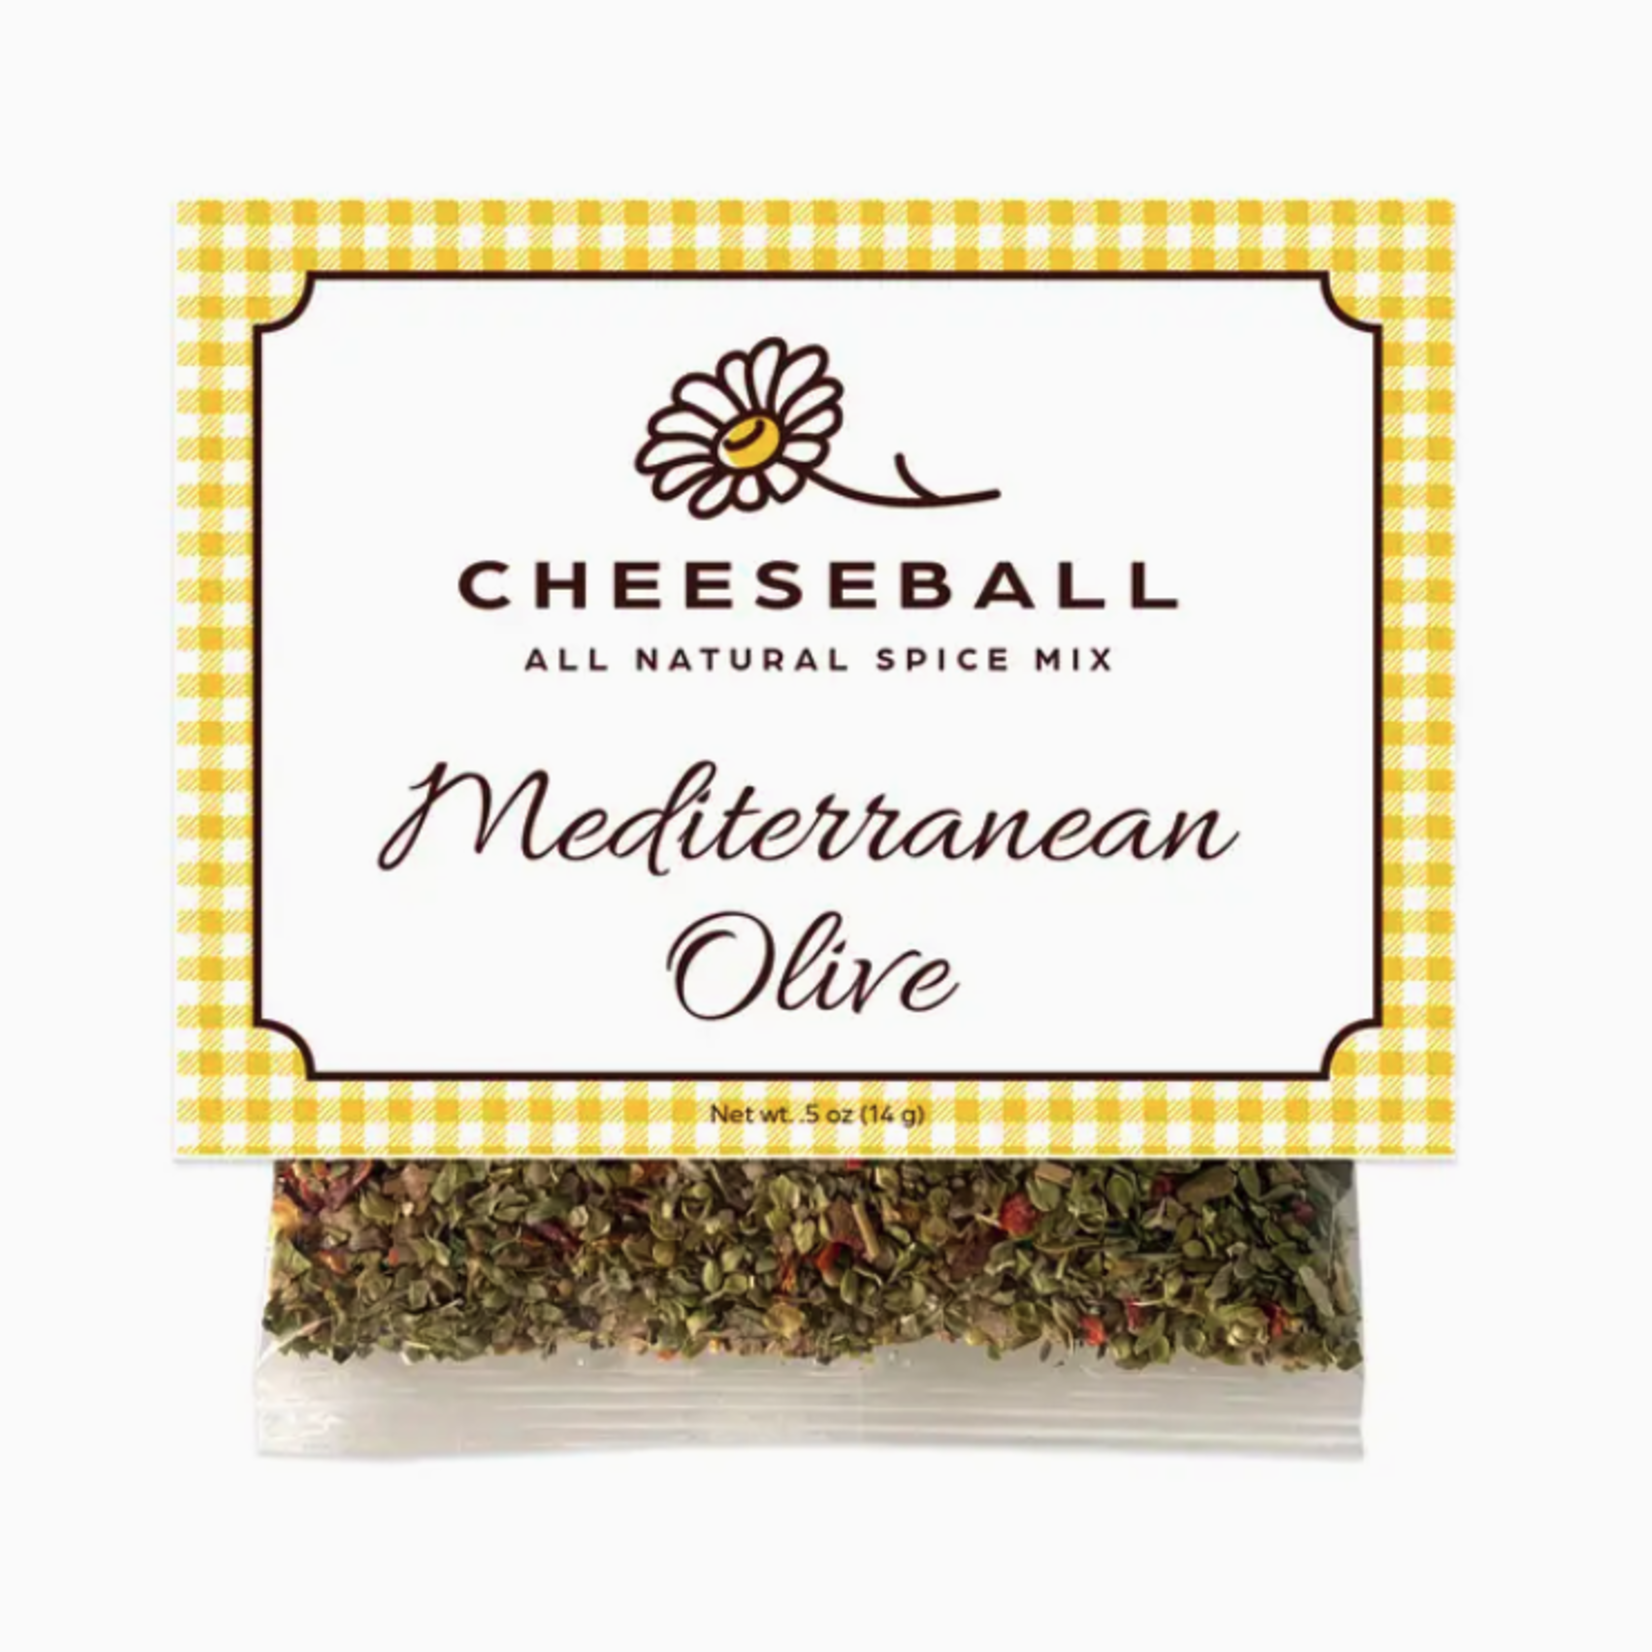 Salt Sisters Mediterranean Olive Cheeseball